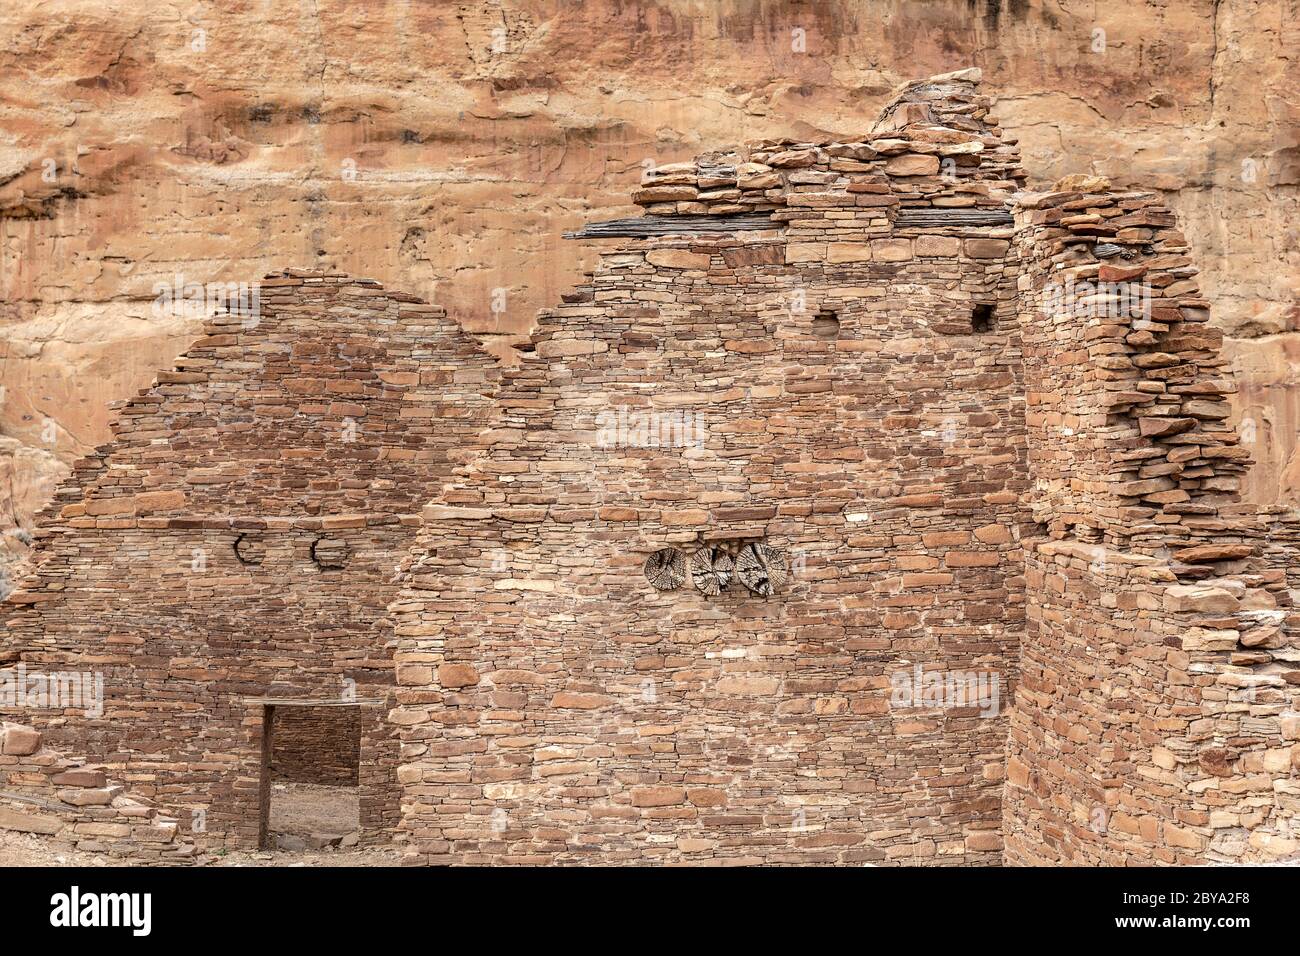 NM00615-00...NEW MEXICO - Masonary stone walls at Chetro Ketl in Chaco Culture National Historic Park. Stock Photo